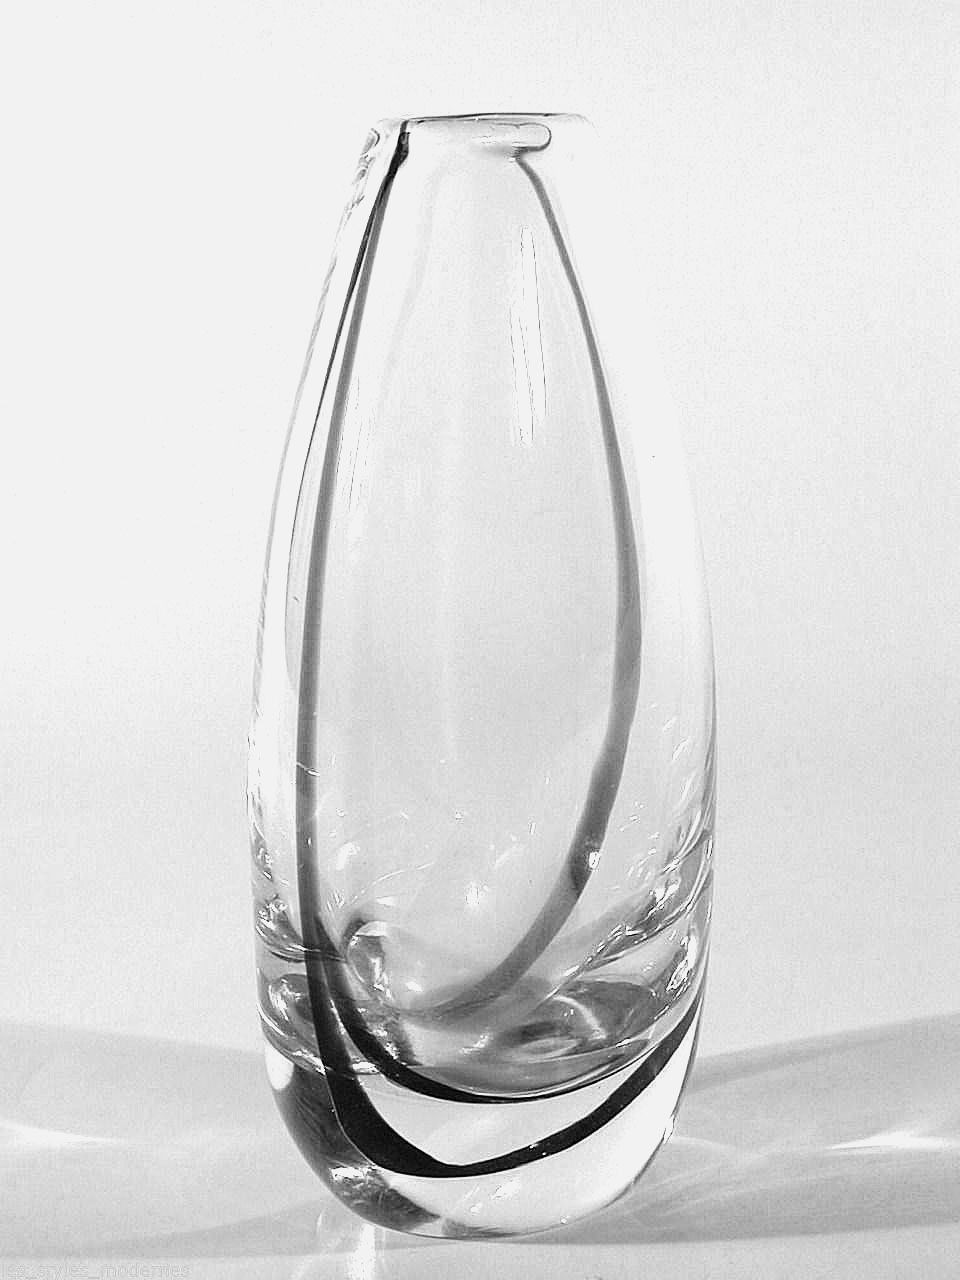 Kosta Boda Crystal Vase Of Kosta Glas Vase A Design Vicke Lindstrand A Signiert A Sweden Art Pertaining to 1 Von 1 Siehe Mehr